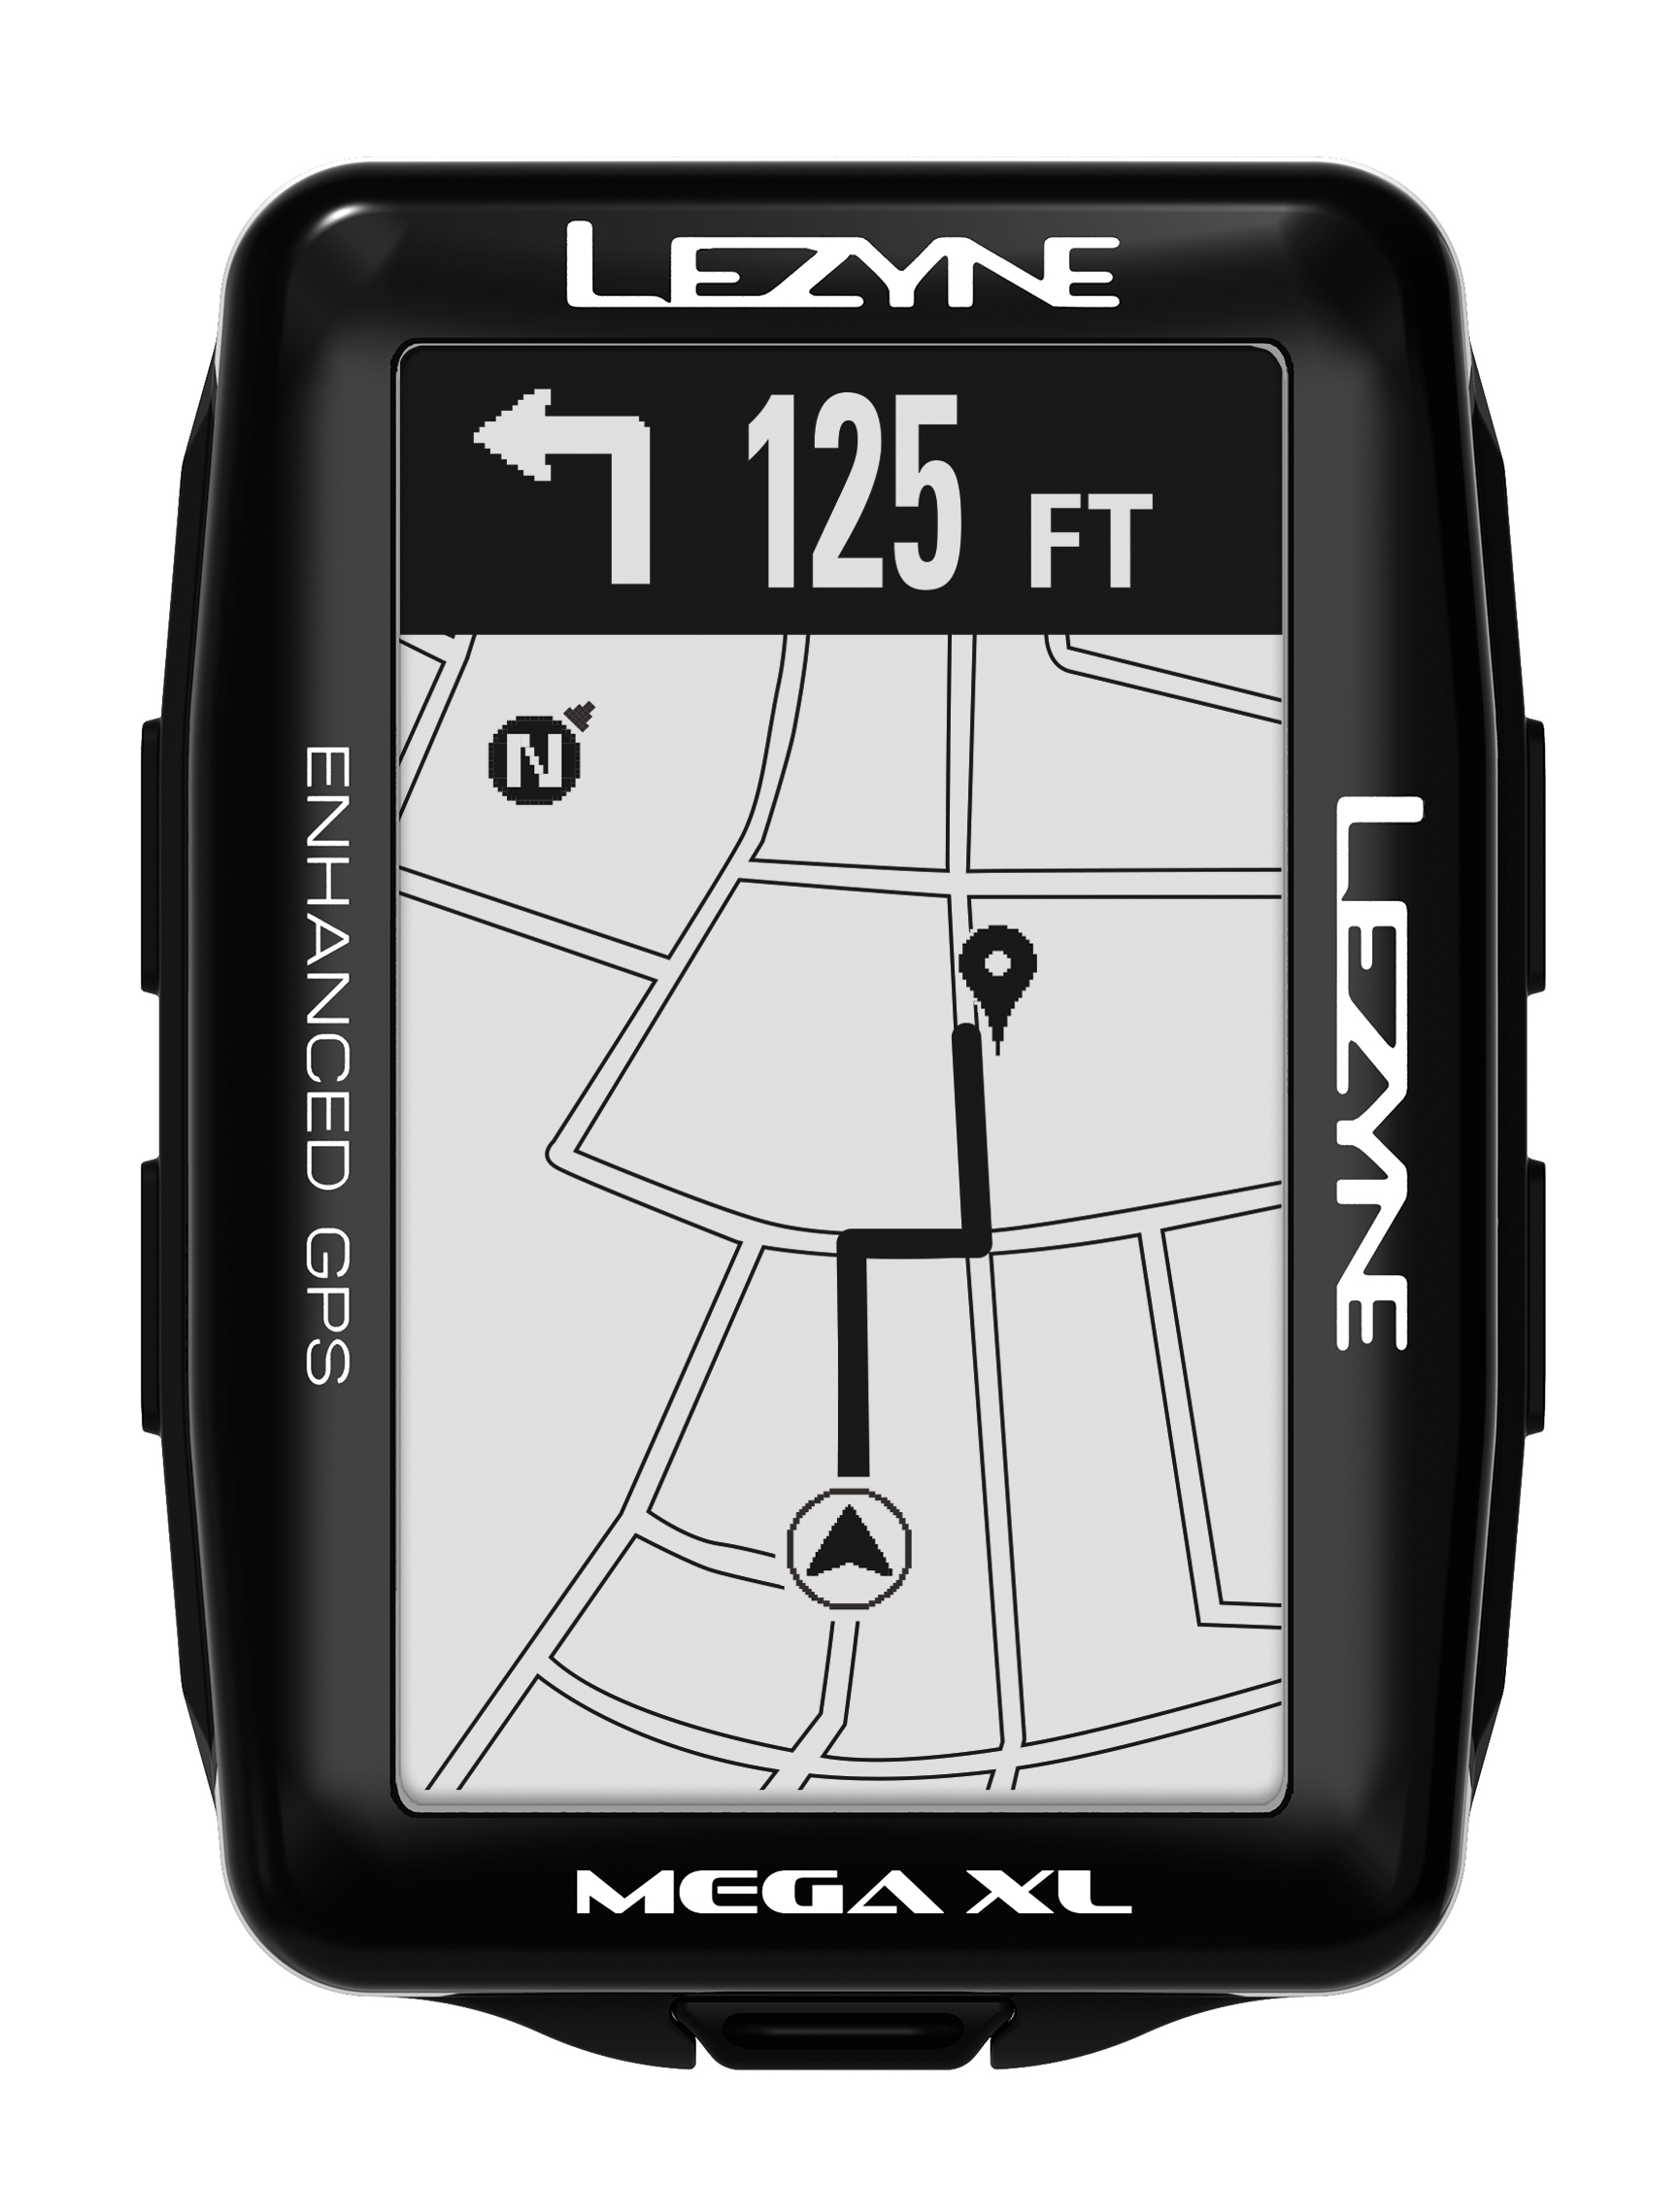 Đồng Hồ Đo Tốc Độ Lezyne Mega XL GPS (Đen)